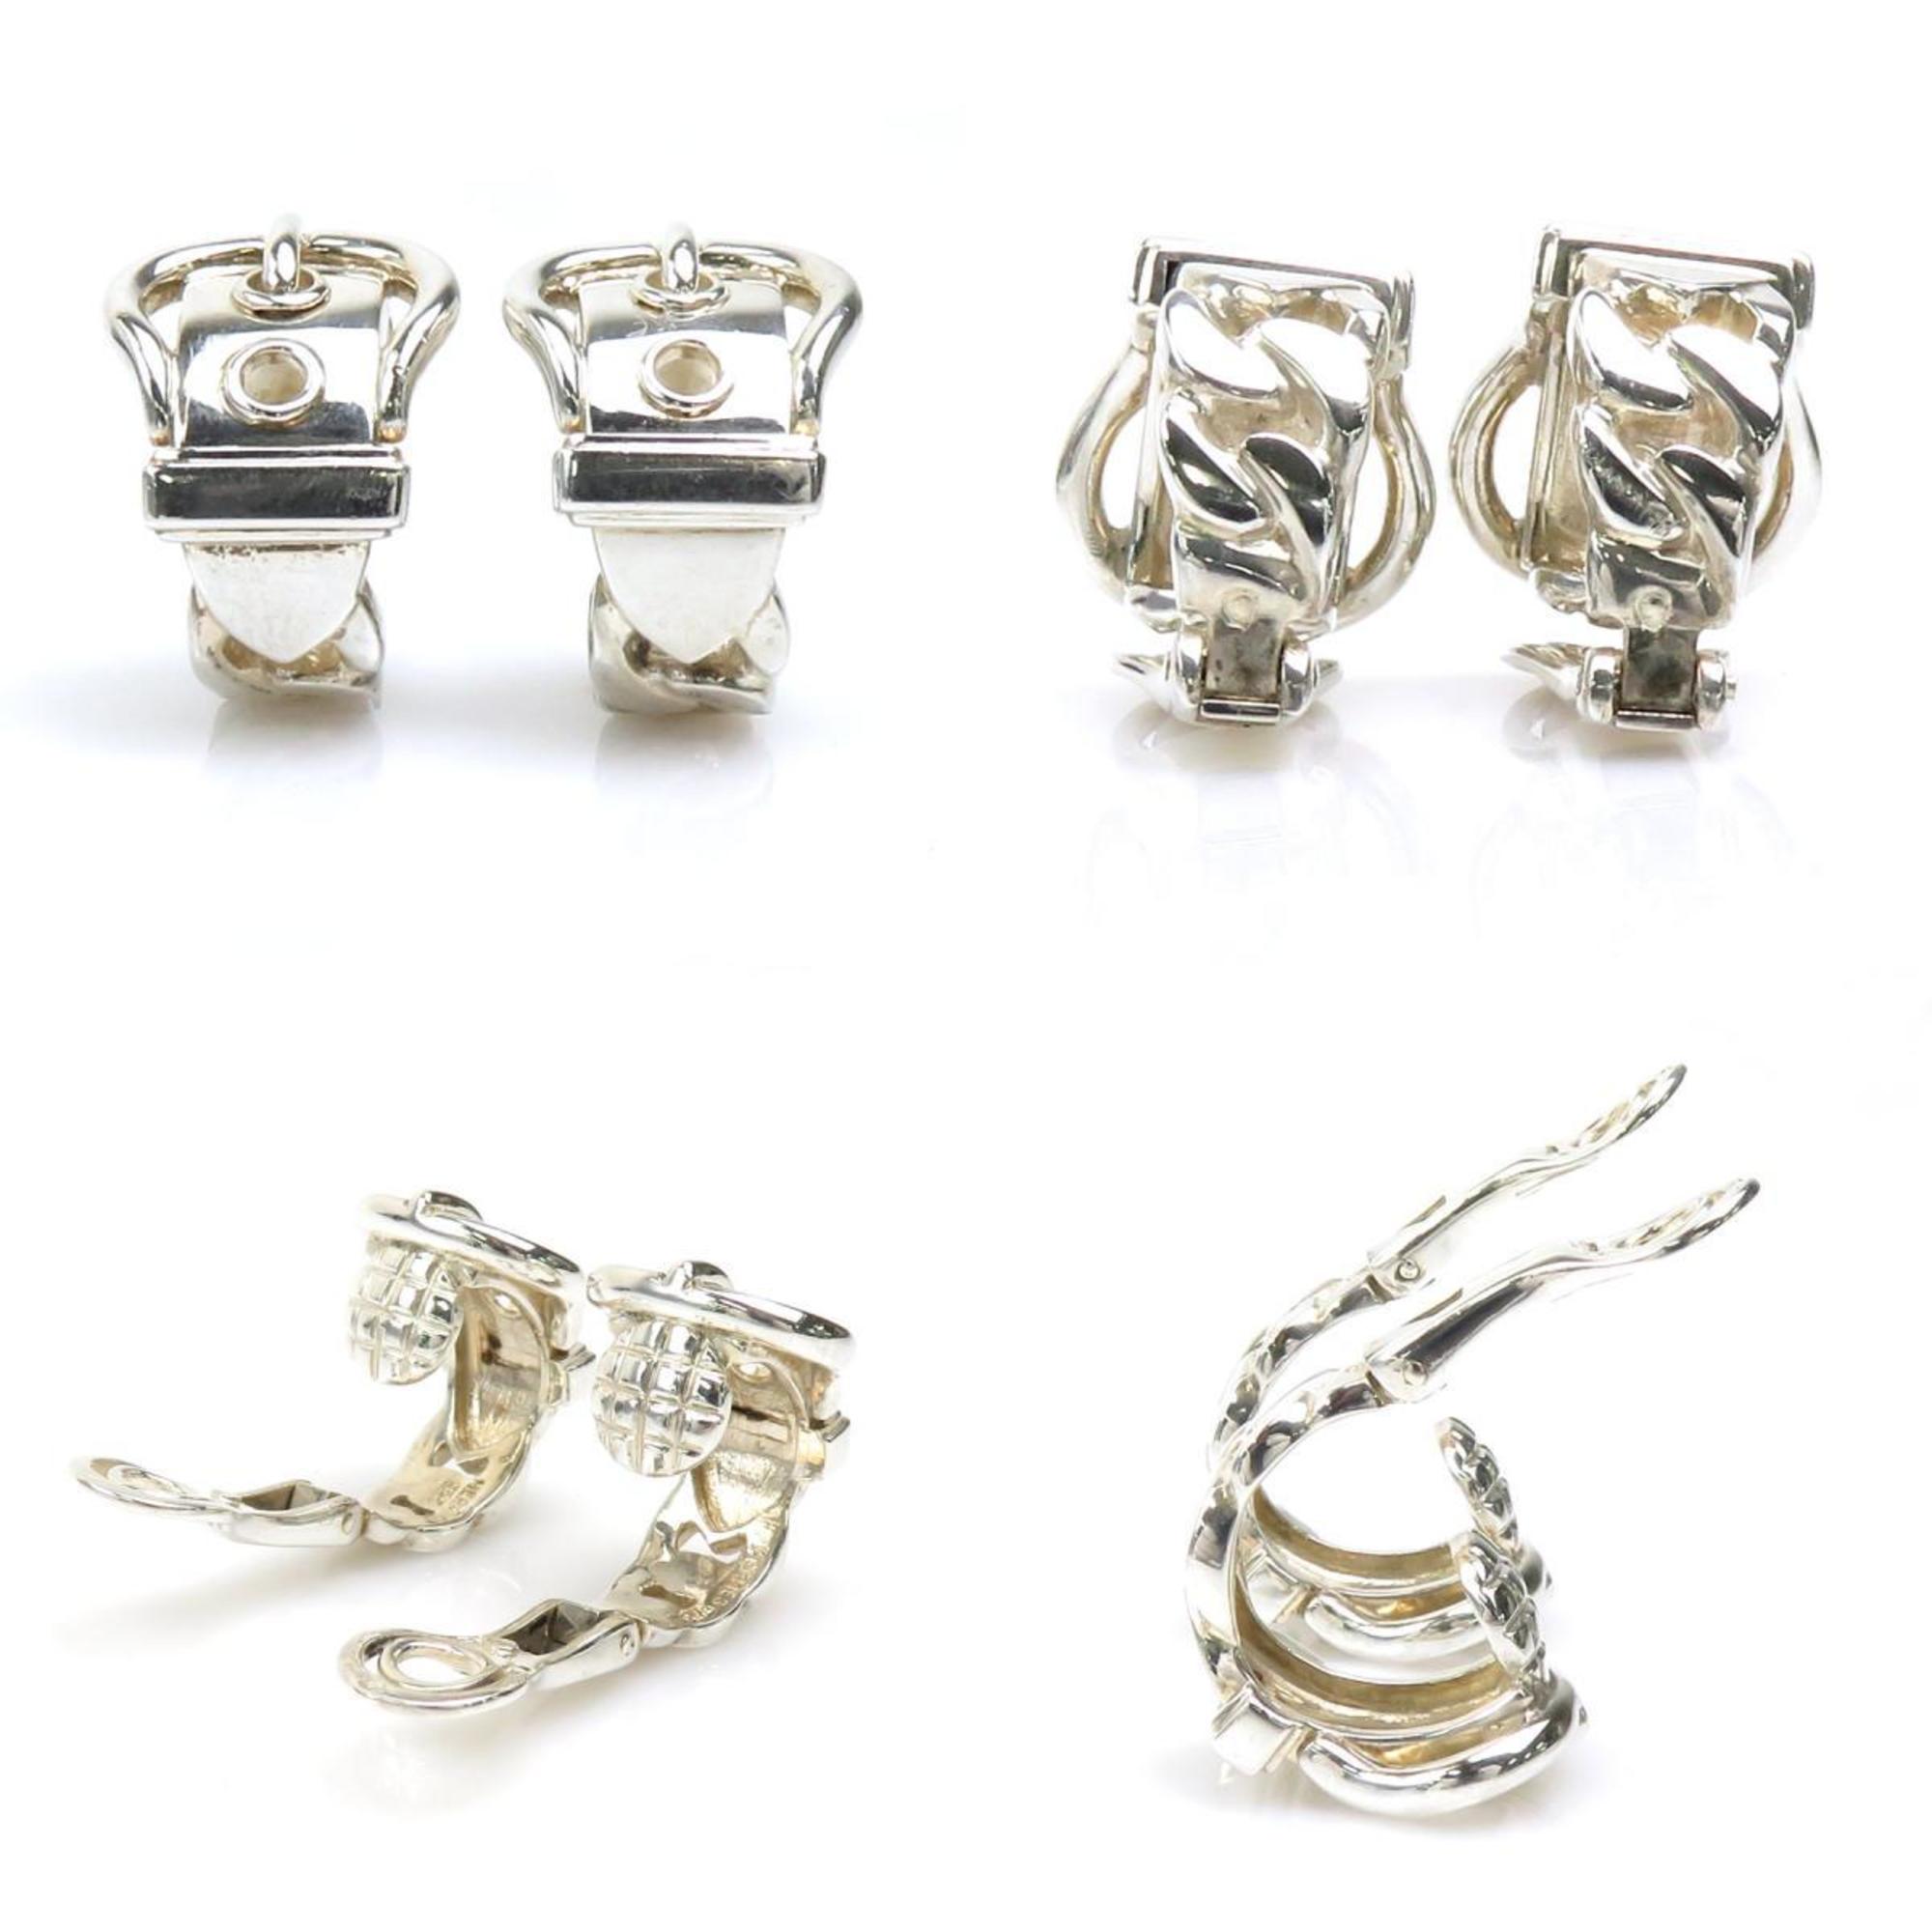 HERMES Earrings Bookle Serie Silver 925 Women's